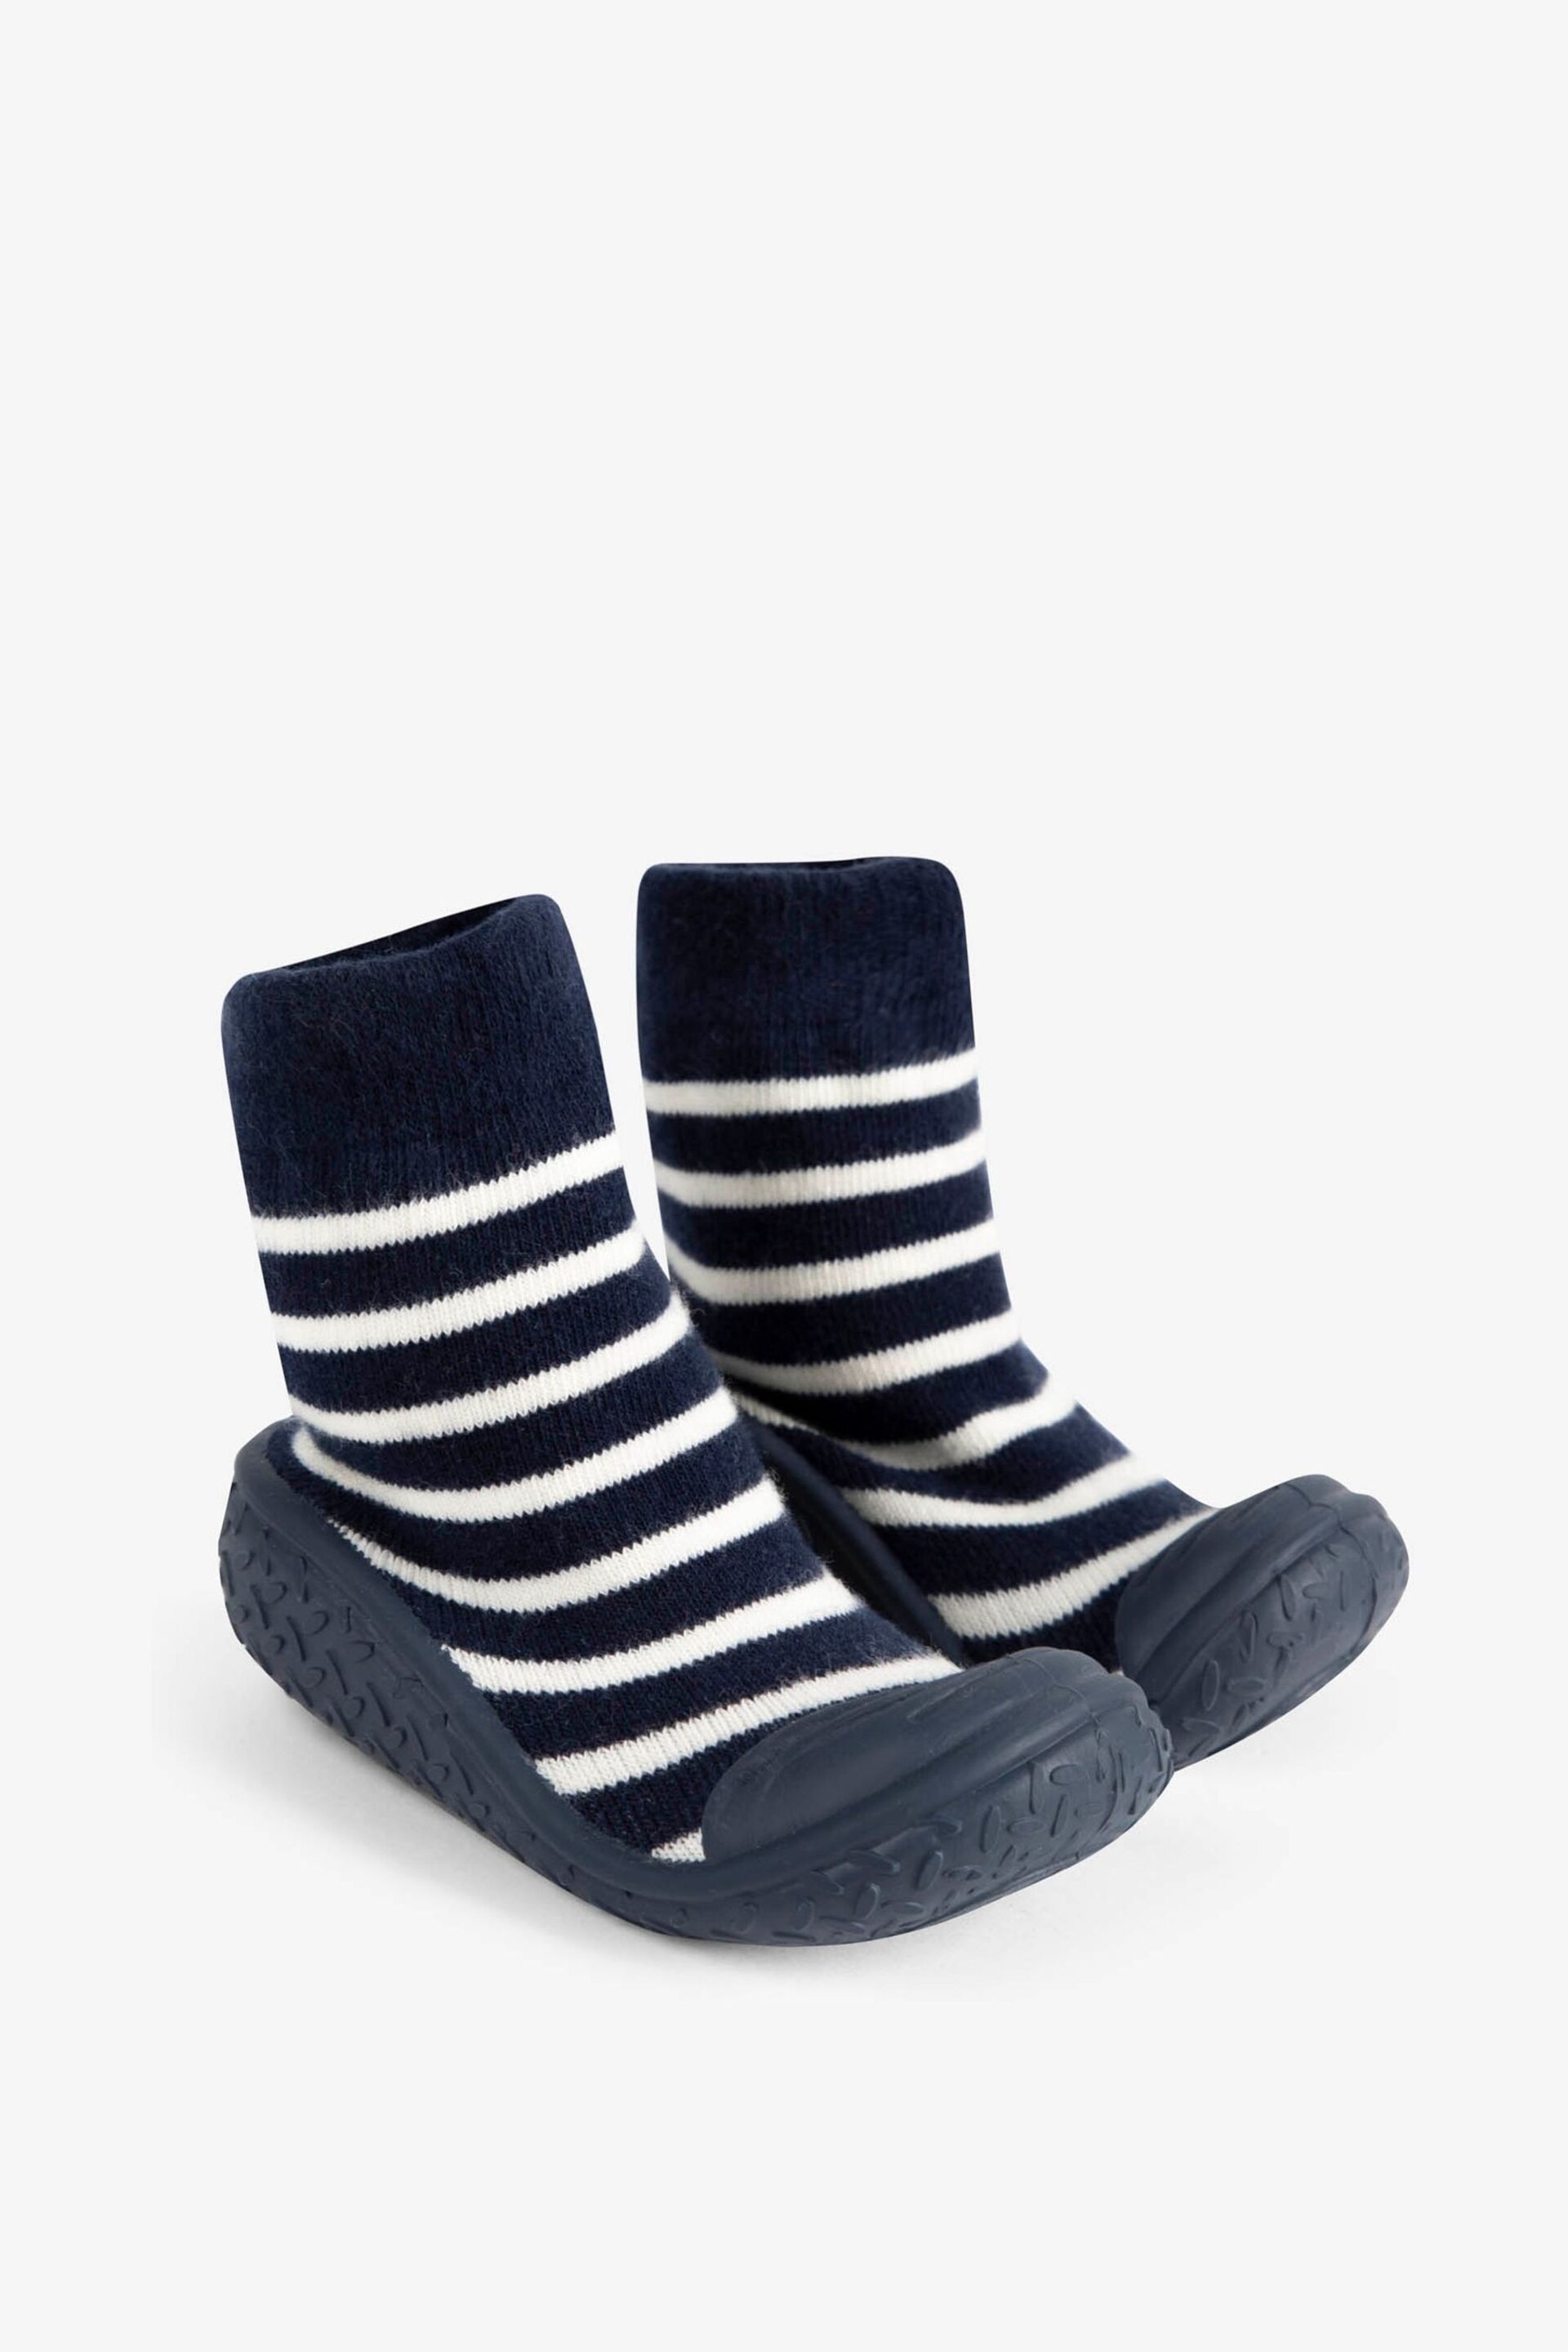 JoJo Maman Bébé Navy Ecru Stripe Stripe Indoor Outdoor Slipper Socks - Image 1 of 4